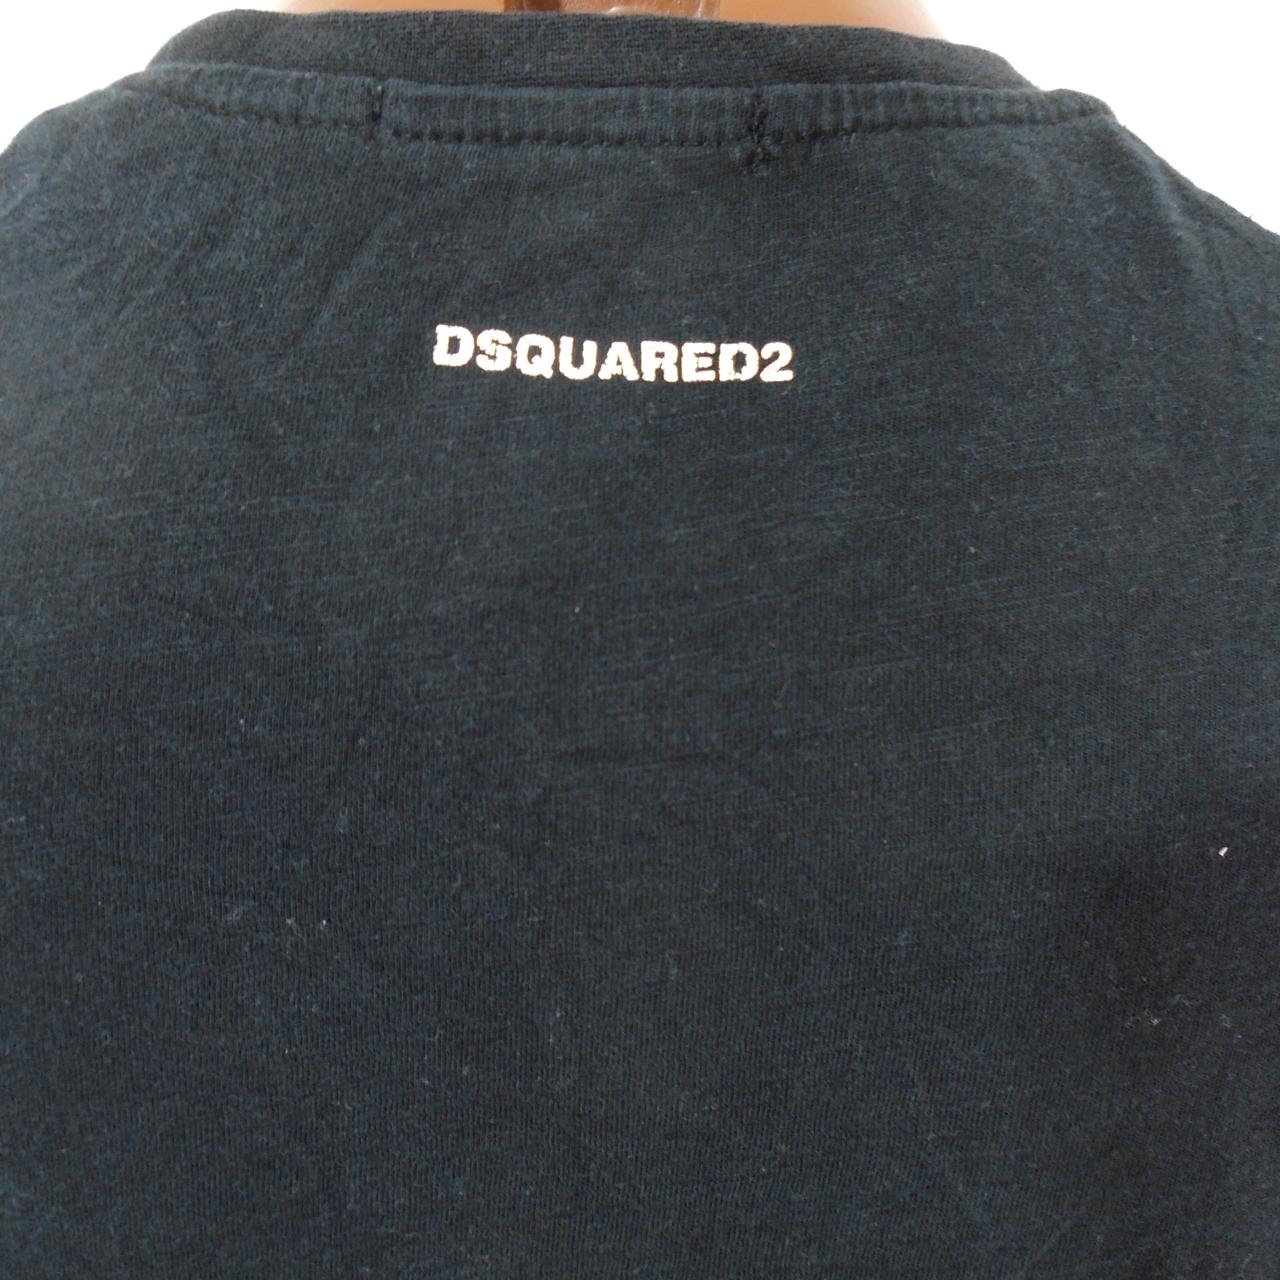 Herren-T-Shirt Dsquared2. Schwarz. XXL. Gebraucht. Gut